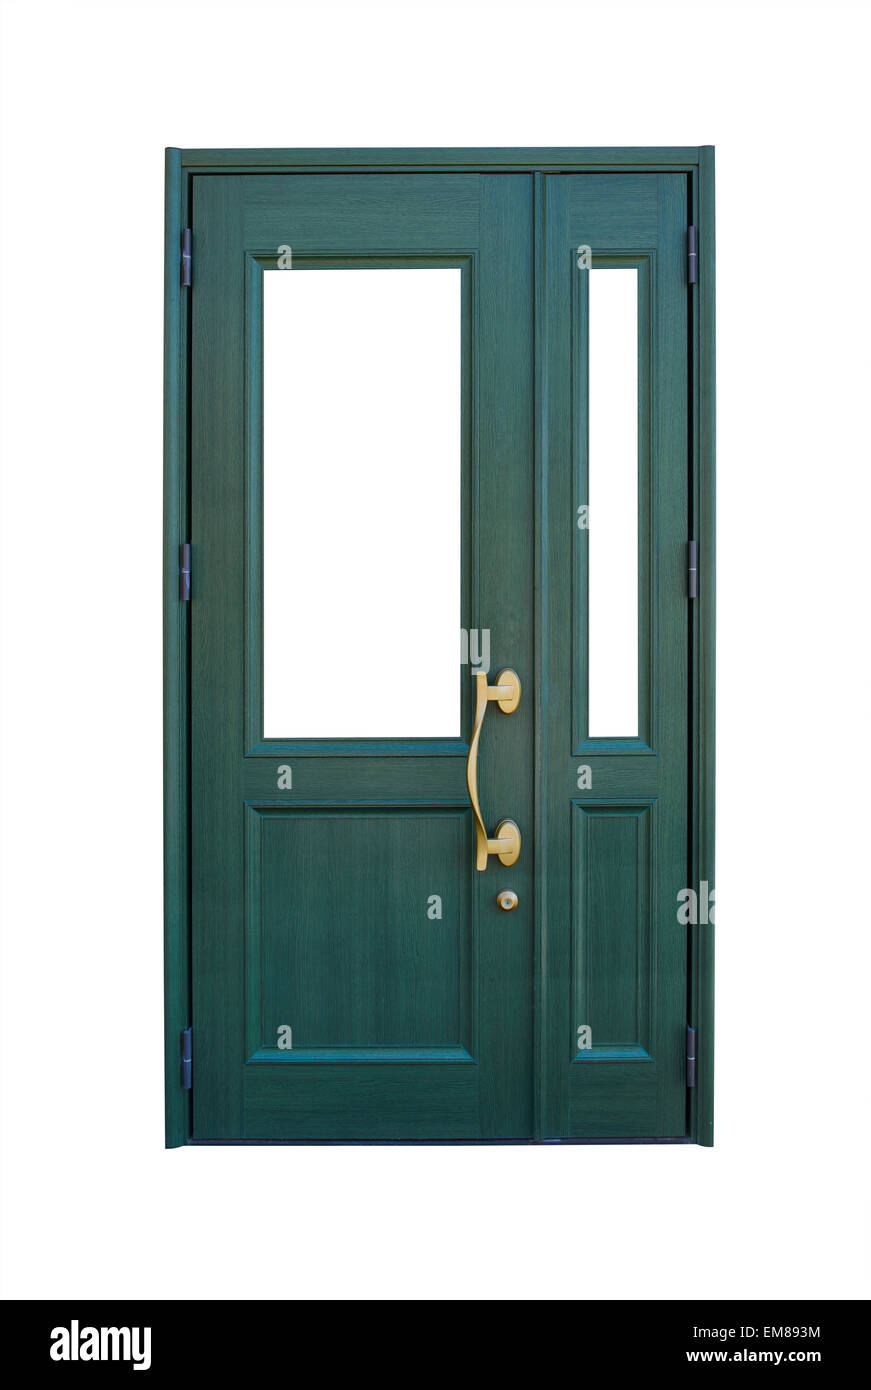 Closed wooden green door Stock Photo